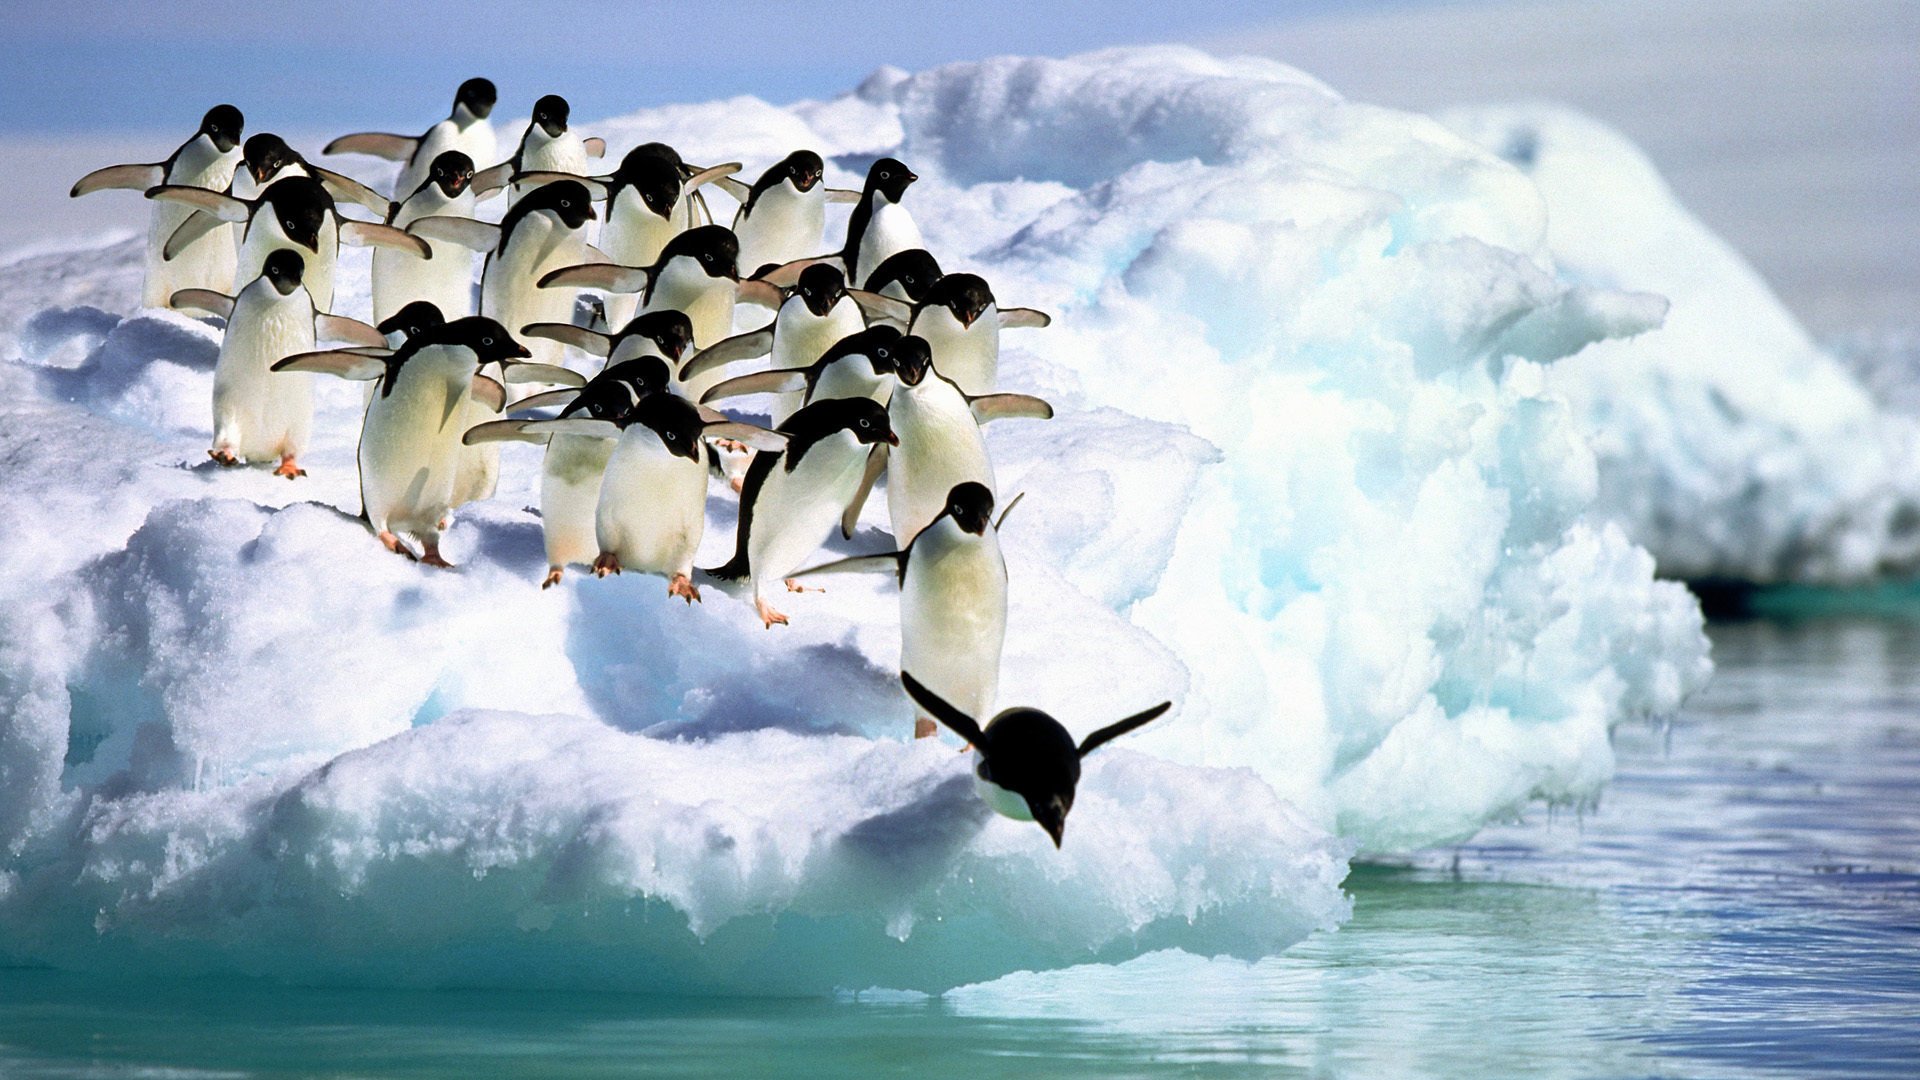 Стая пингвинов прыгает с льдины